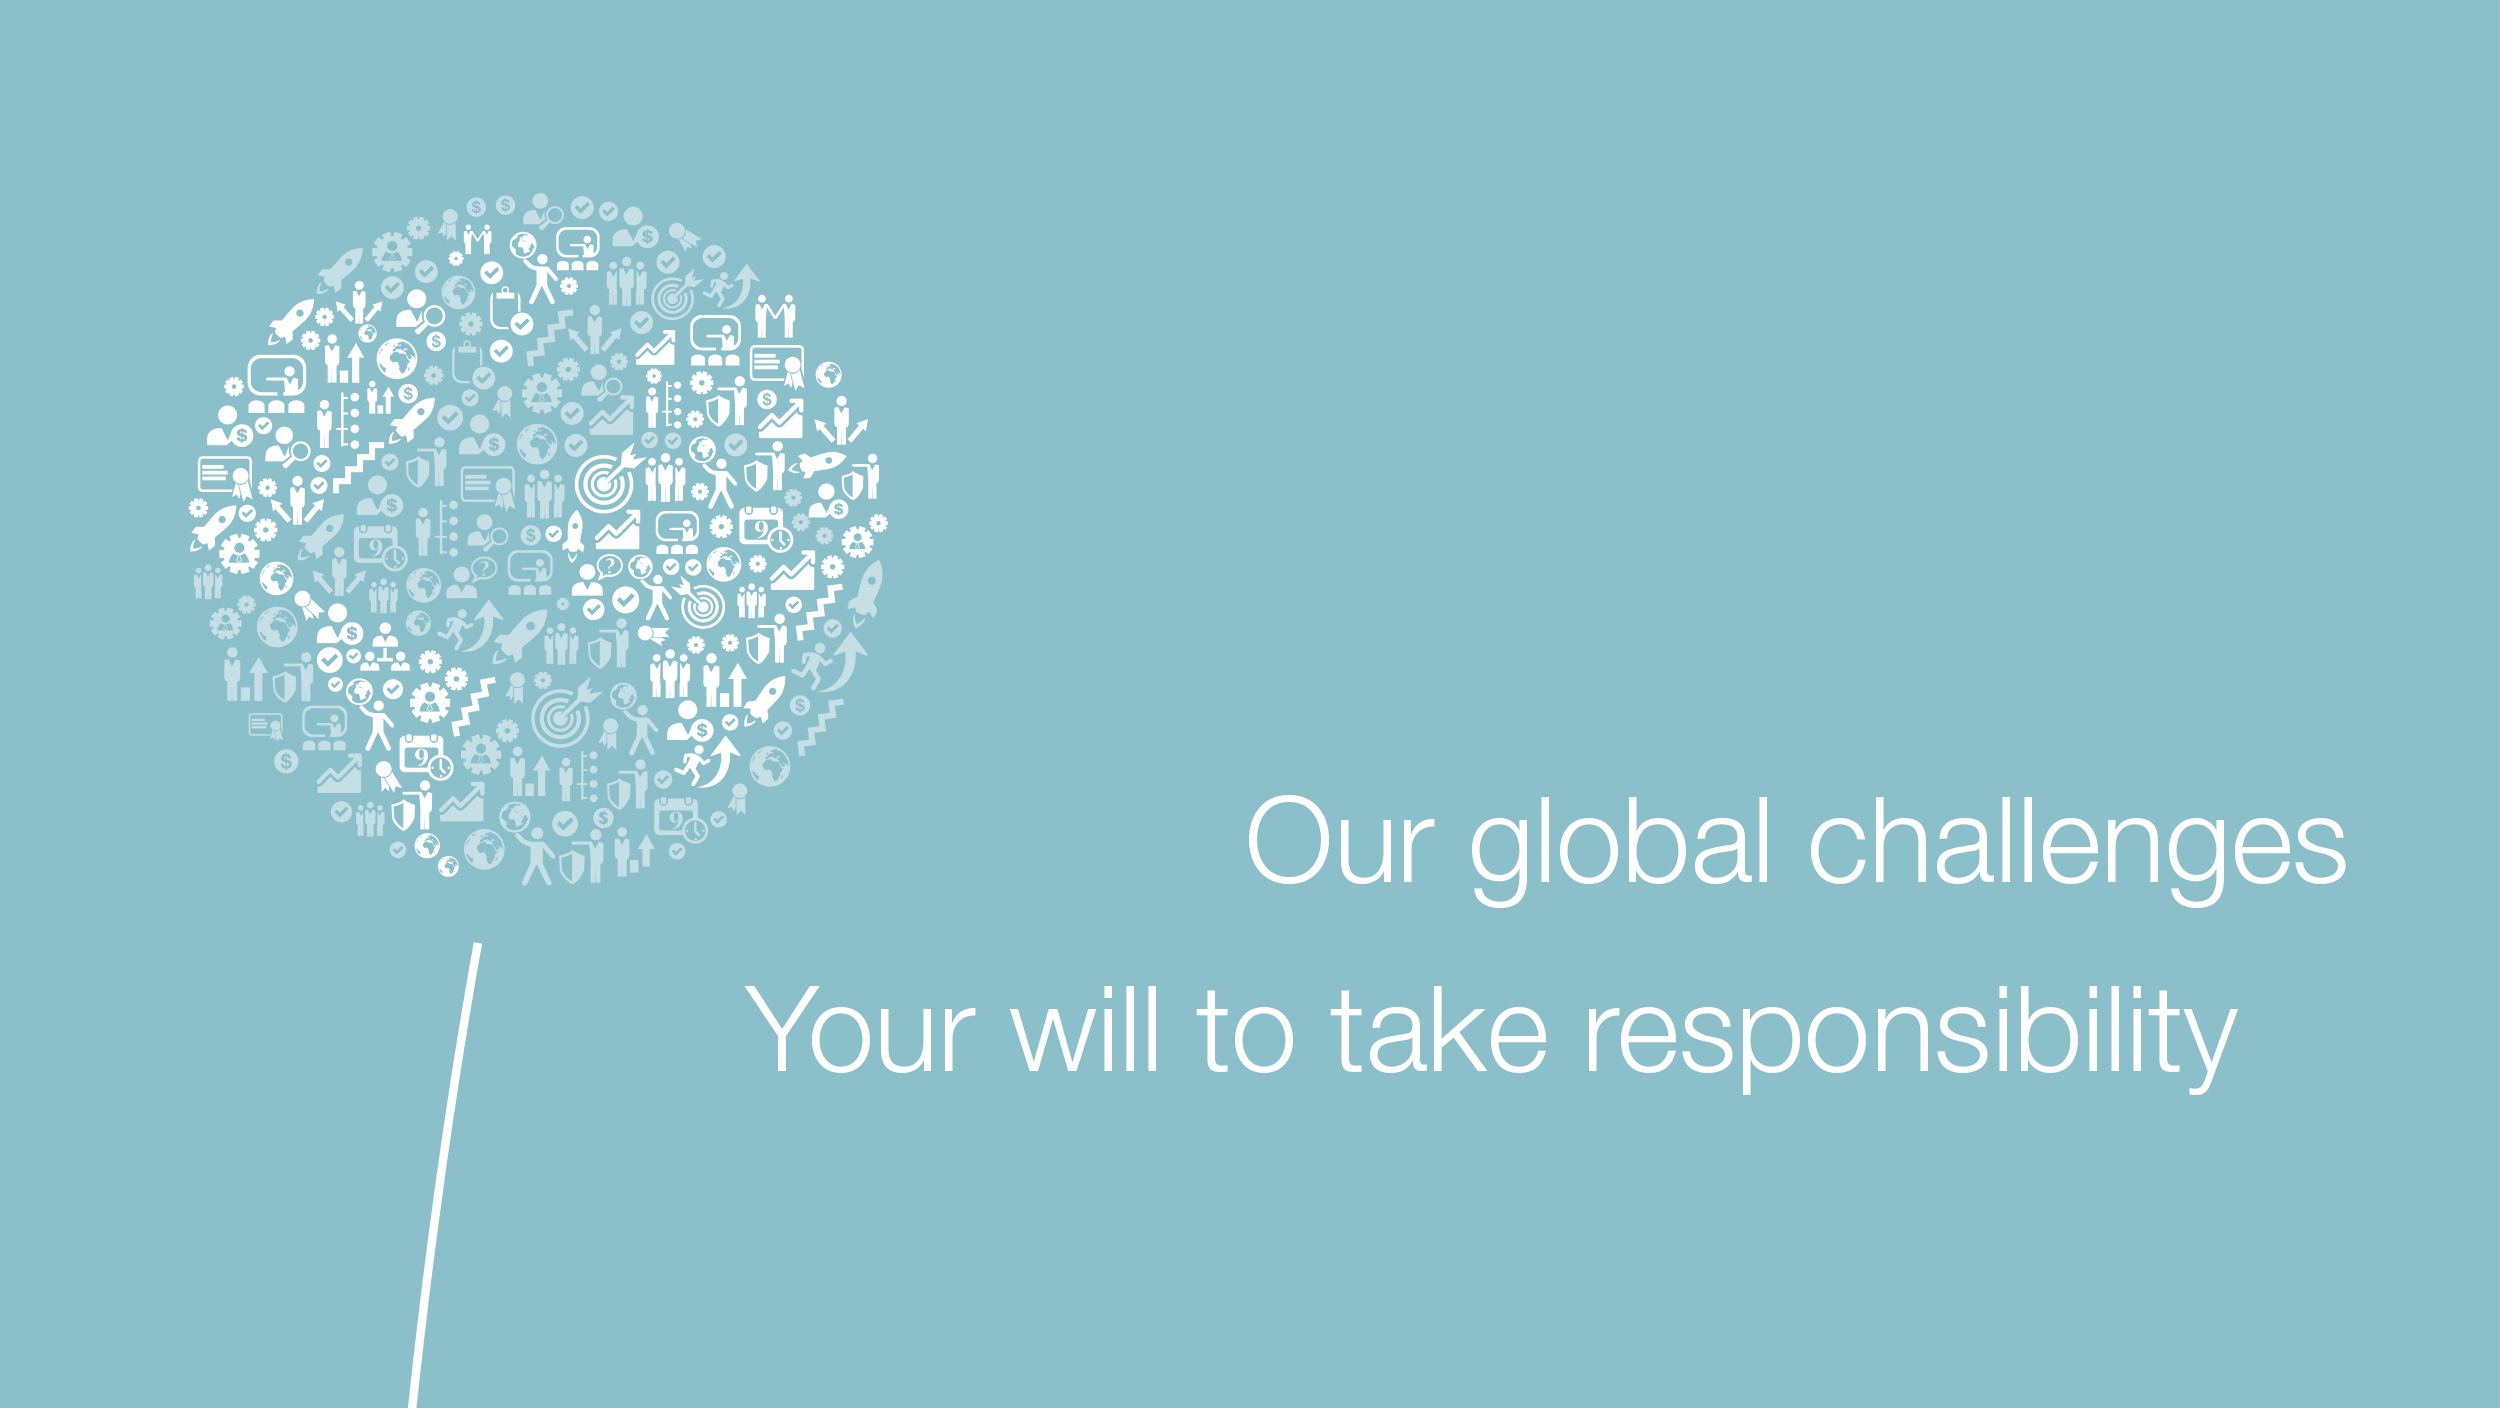 Diente de león hecho de iconos en forma de globo, junto al eslogan: Nuestros desafíos globales Tu oportunidad de asumir responsabilidad